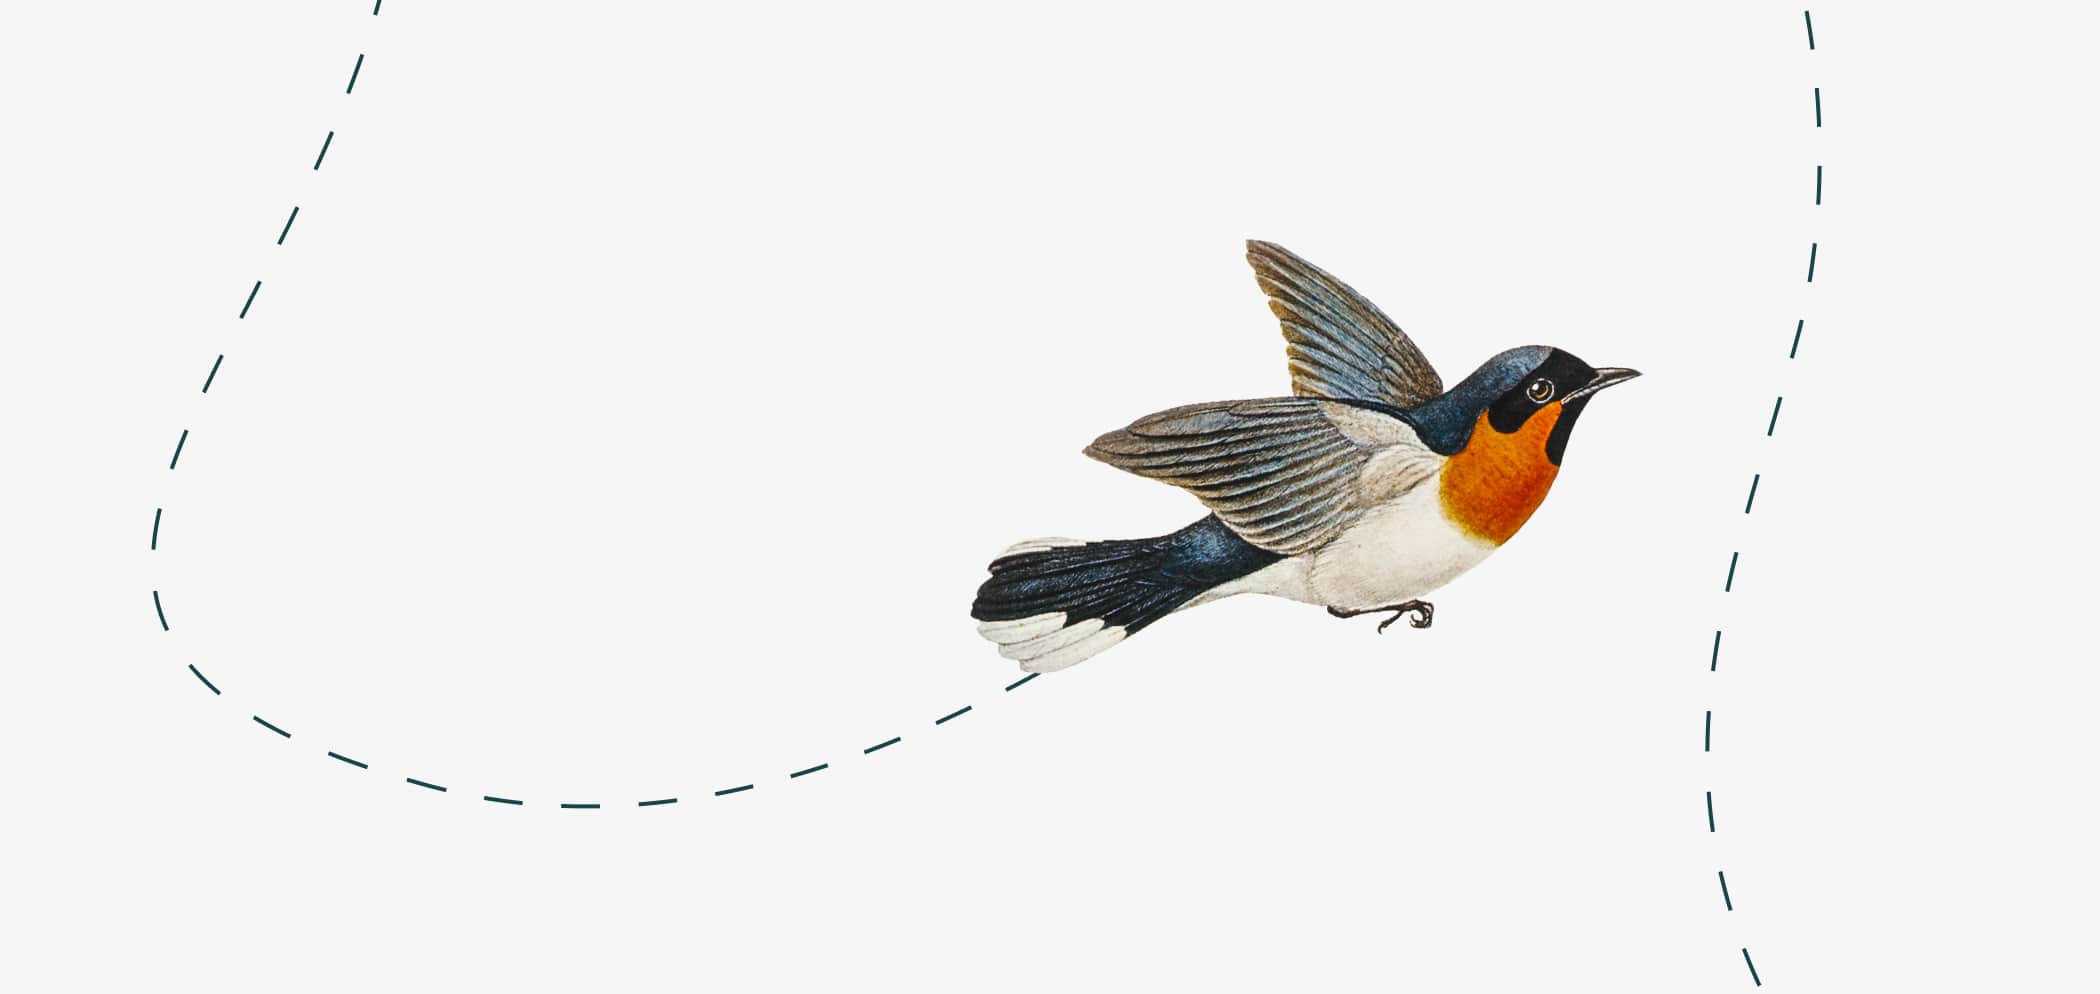 Иллюстрация летящей птицы.